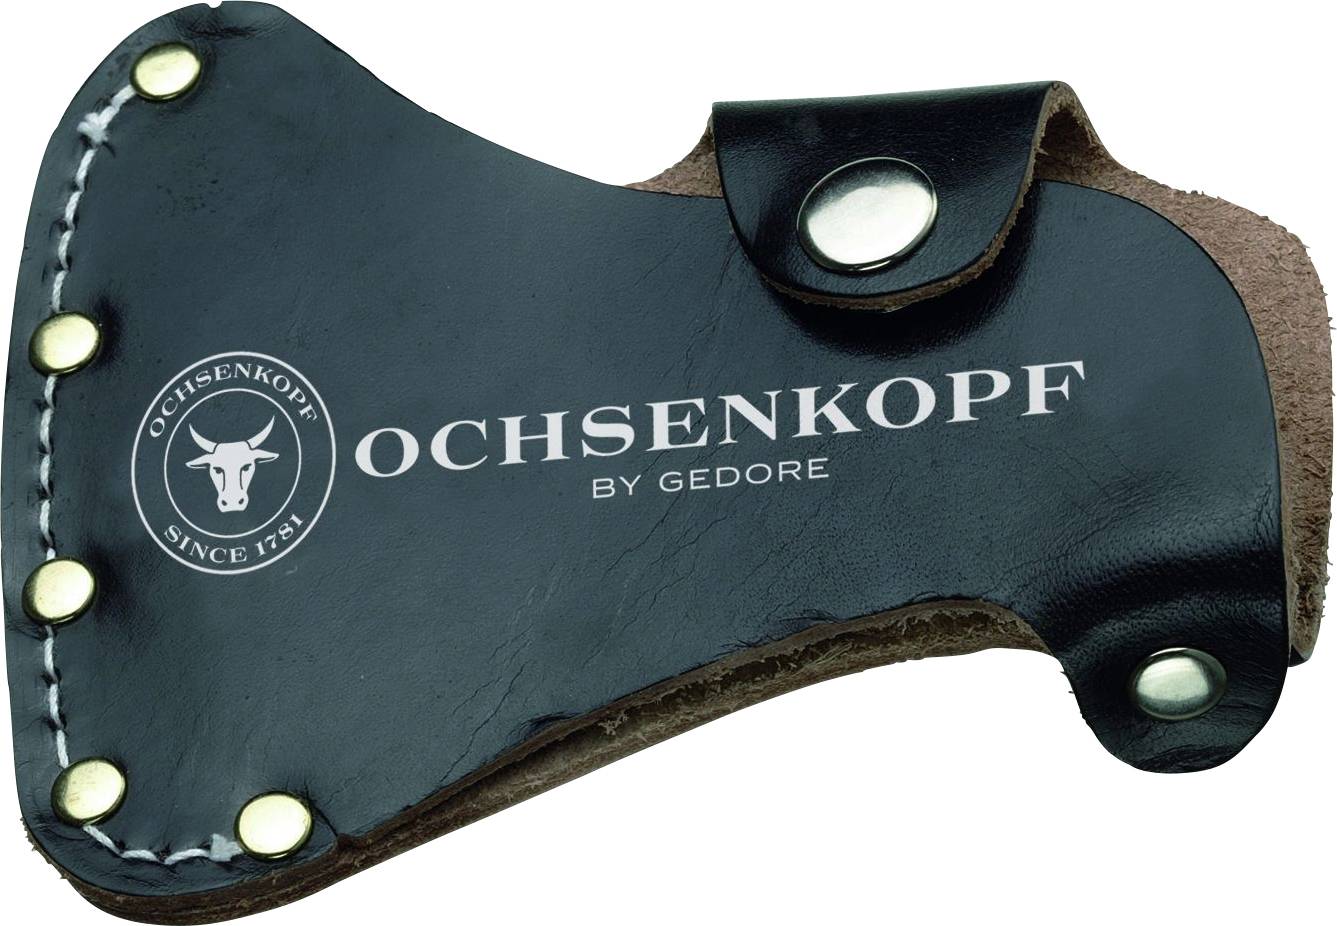 GEDORE Ochsenkopf OX E-270 Tasche für Ganzstahlbeil 2153742 Werkzeugtasche unbestückt